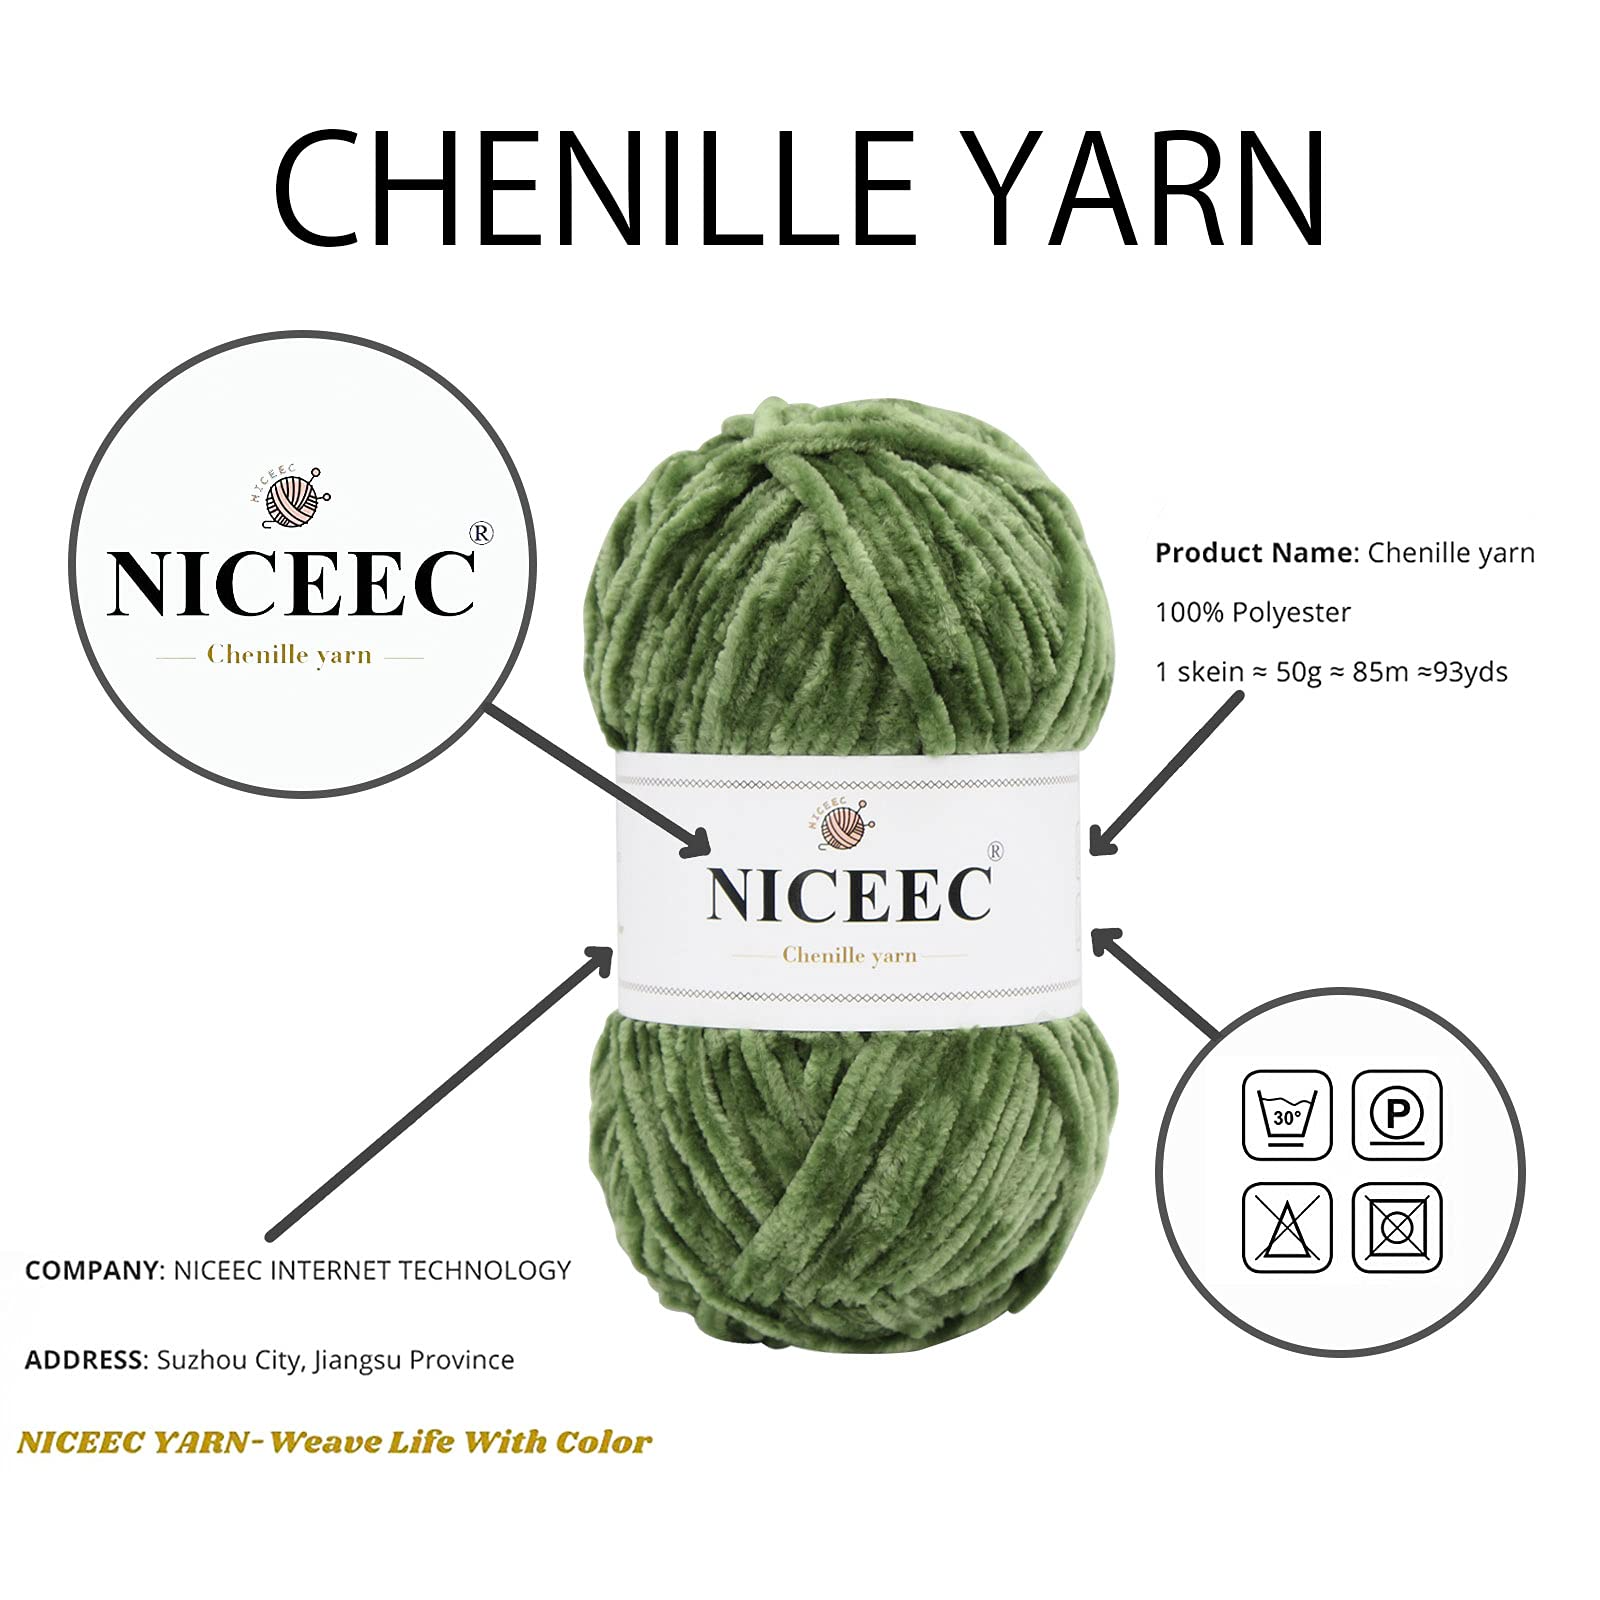 FINECE Soft Velvet Yarn Chenille Yarn for Crocheting Baby Blanket Yarn for  Knitting 100 gr (132 yds) Fancy Yarn for Crochet Weaving Craft Amigurumi  Yarn (1 Skein 2040 - Light Camel) 2040-Light Camel 1 Skein